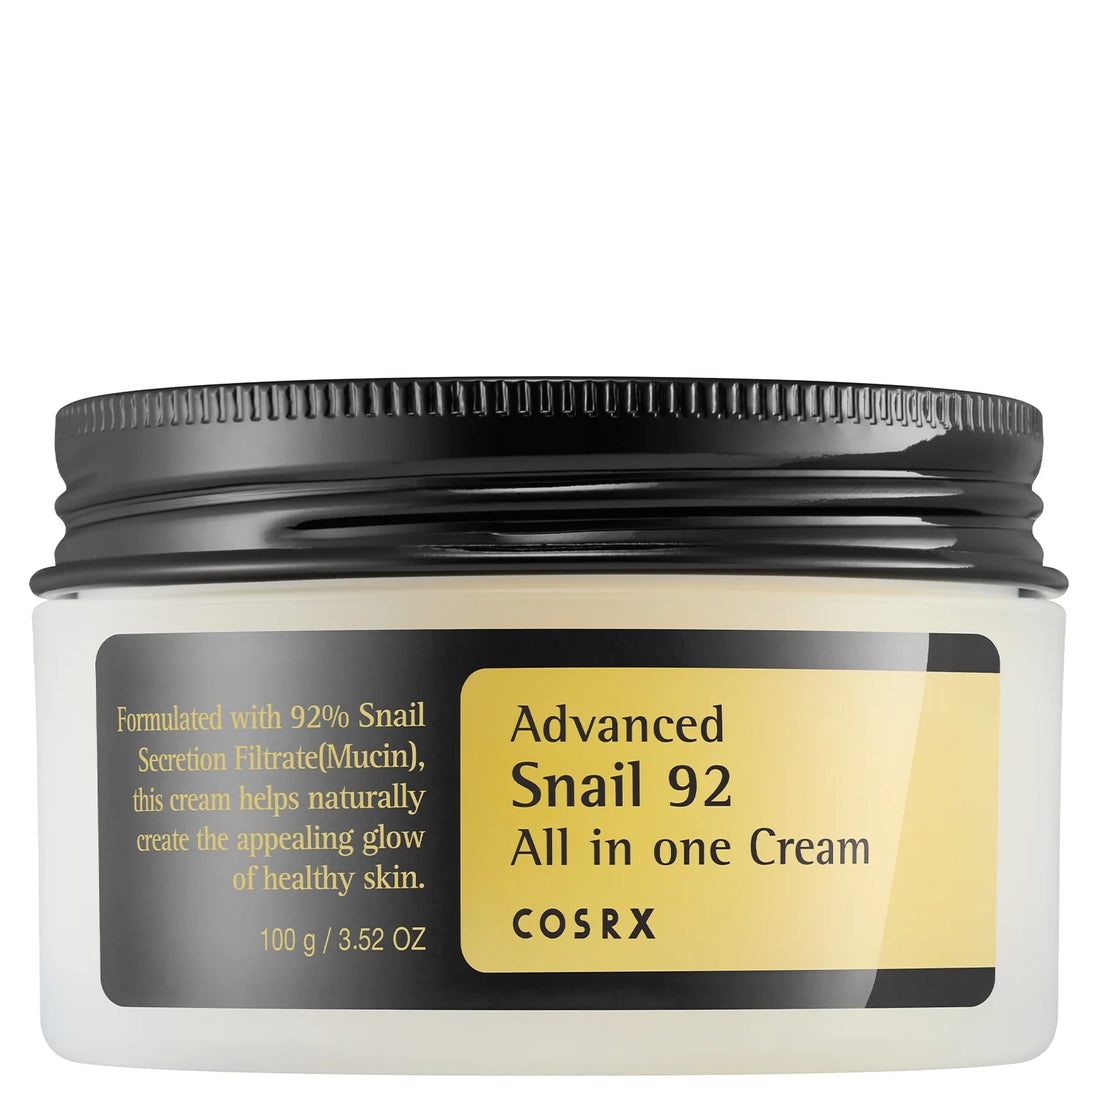 Advanced Snail 92 All in One Cream - Crema viso alla bava di lumaca